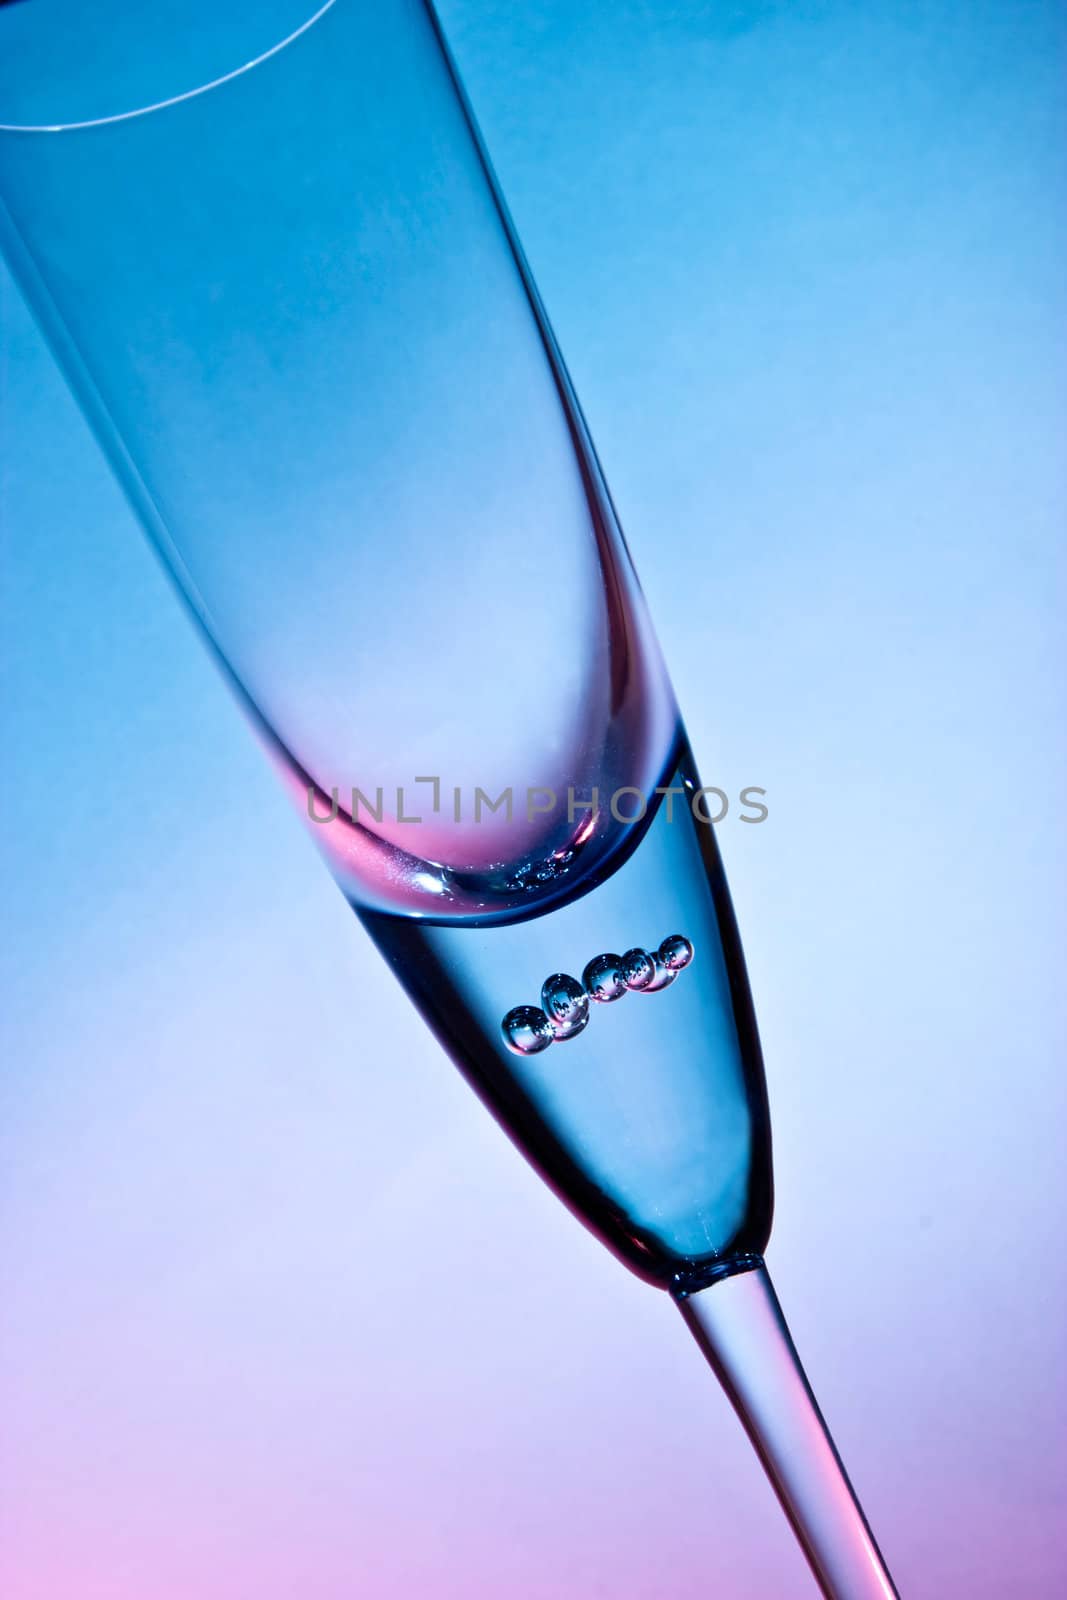 glass for champagne by Natalia-Reutova